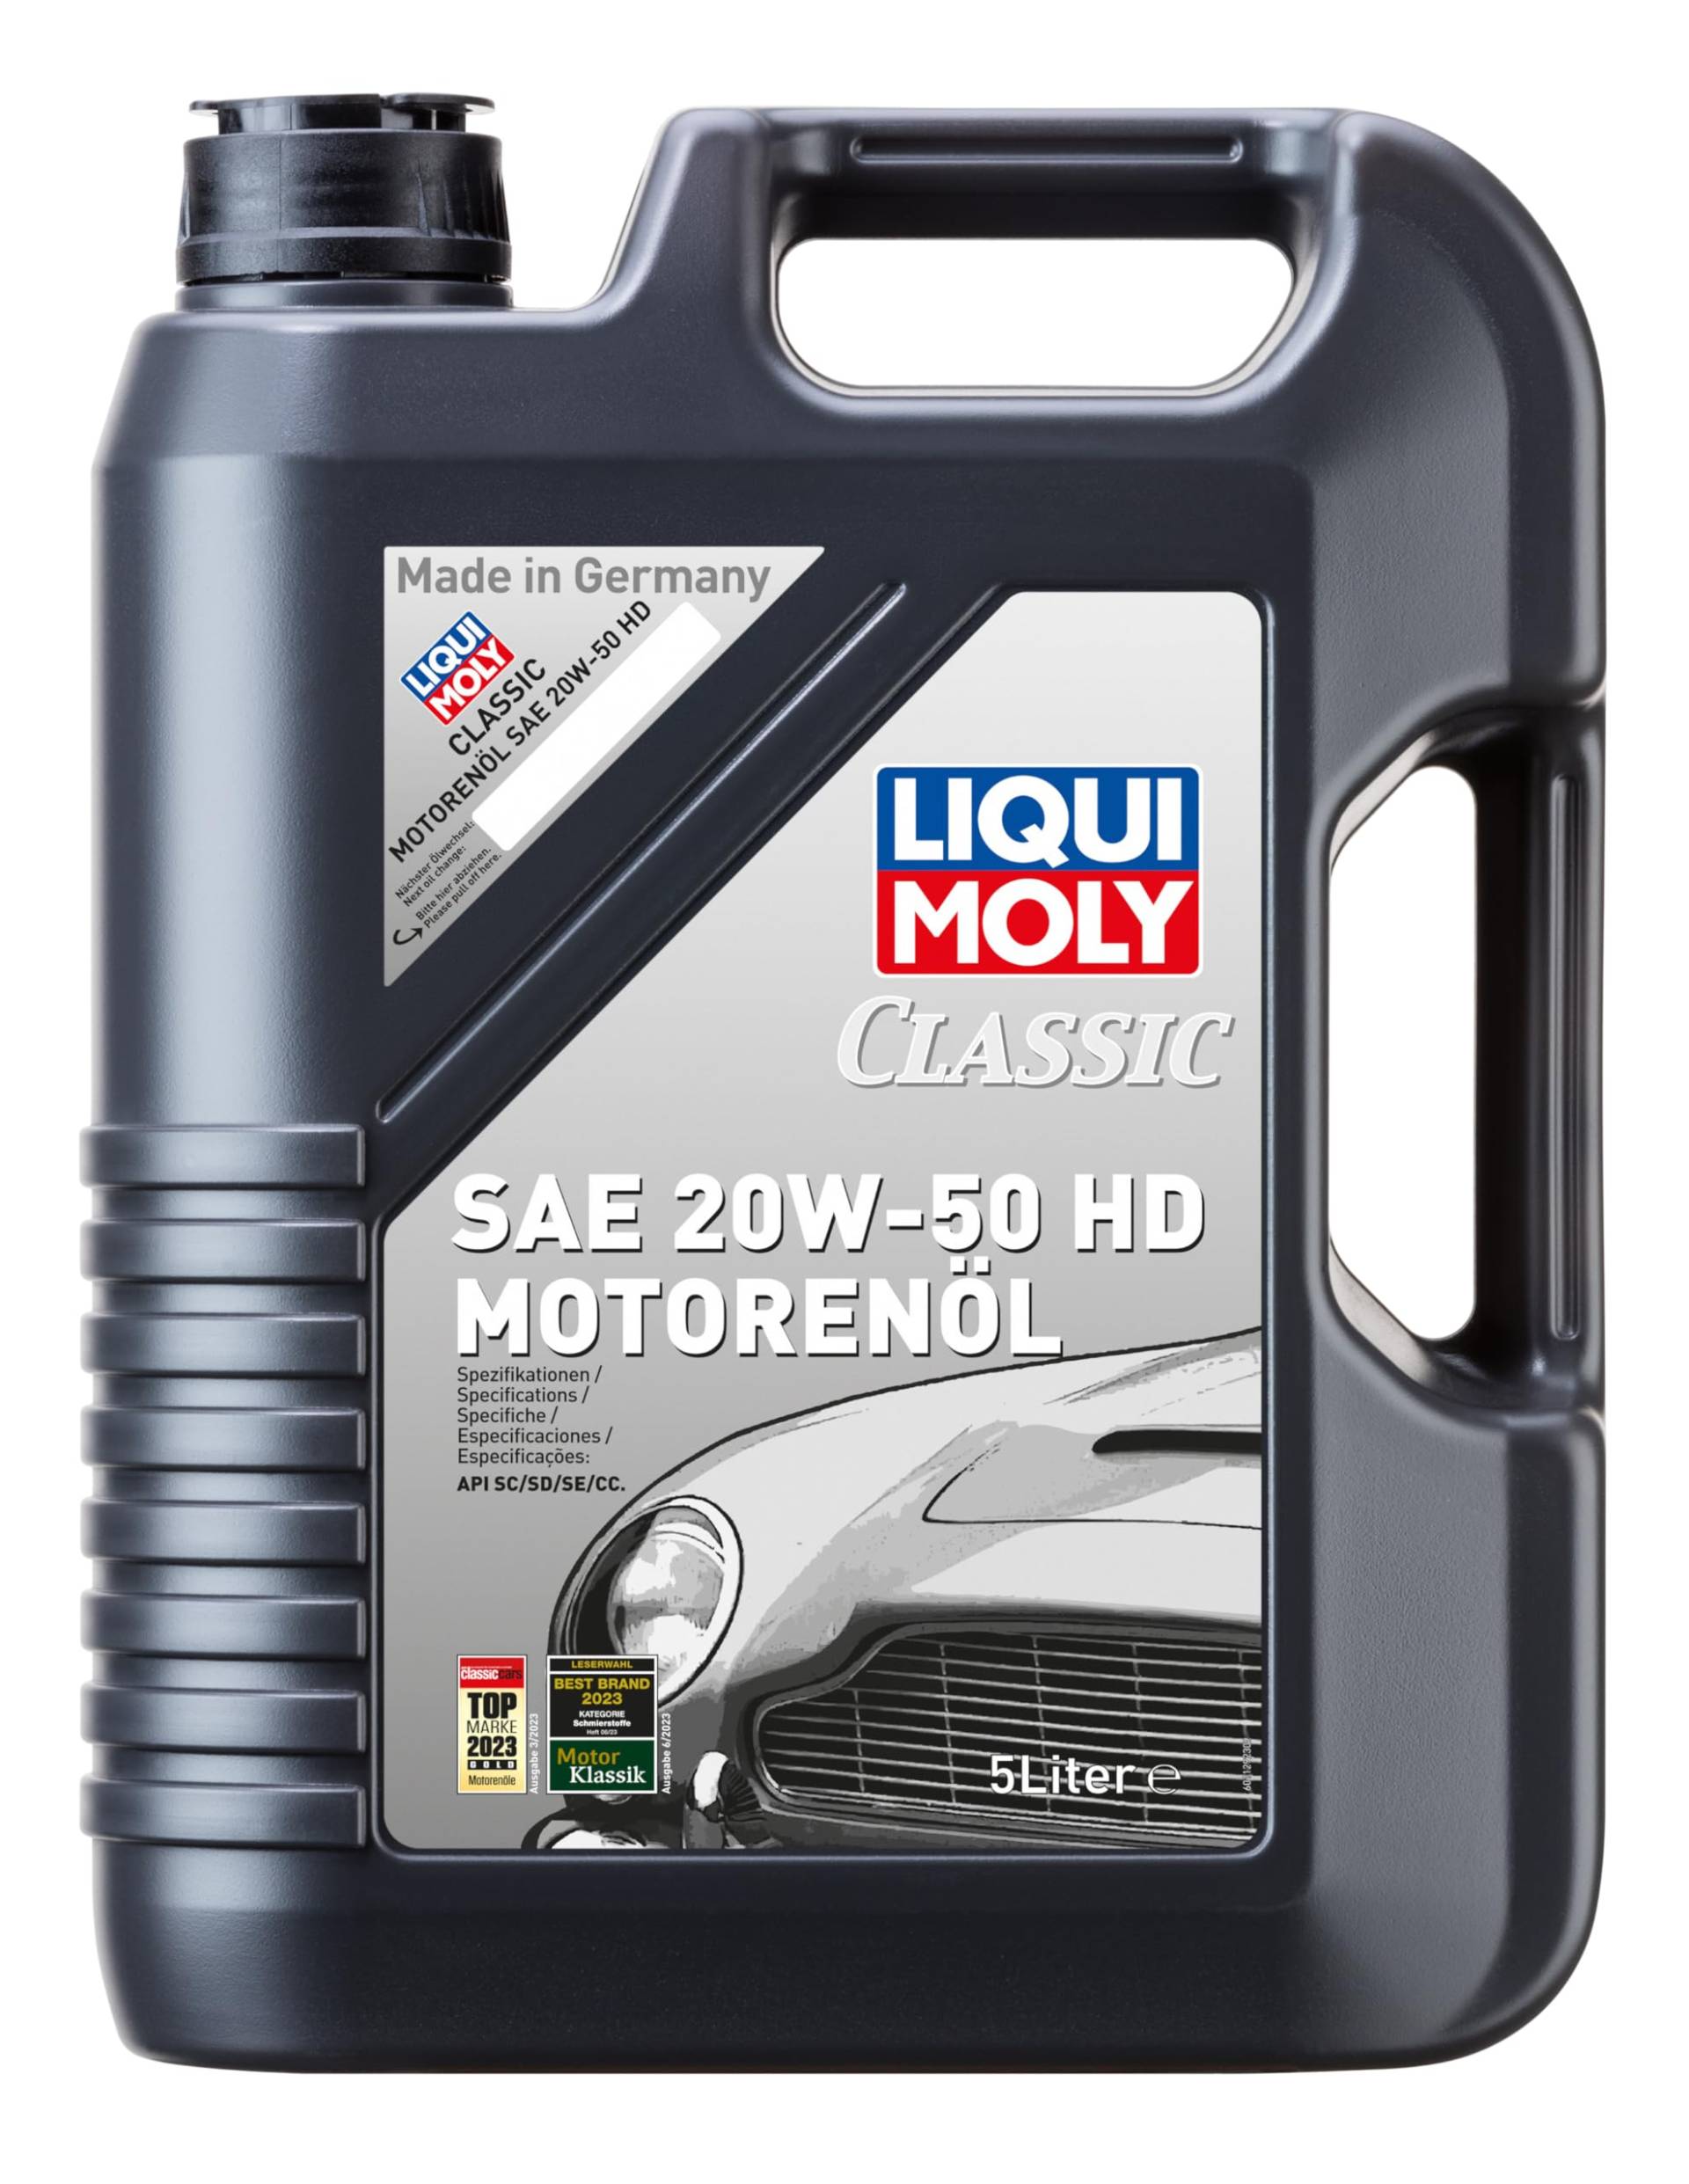 LIQUI MOLY 1129 Classic Motorenöl SAE 20W-50 HD 5 l von Liqui Moly